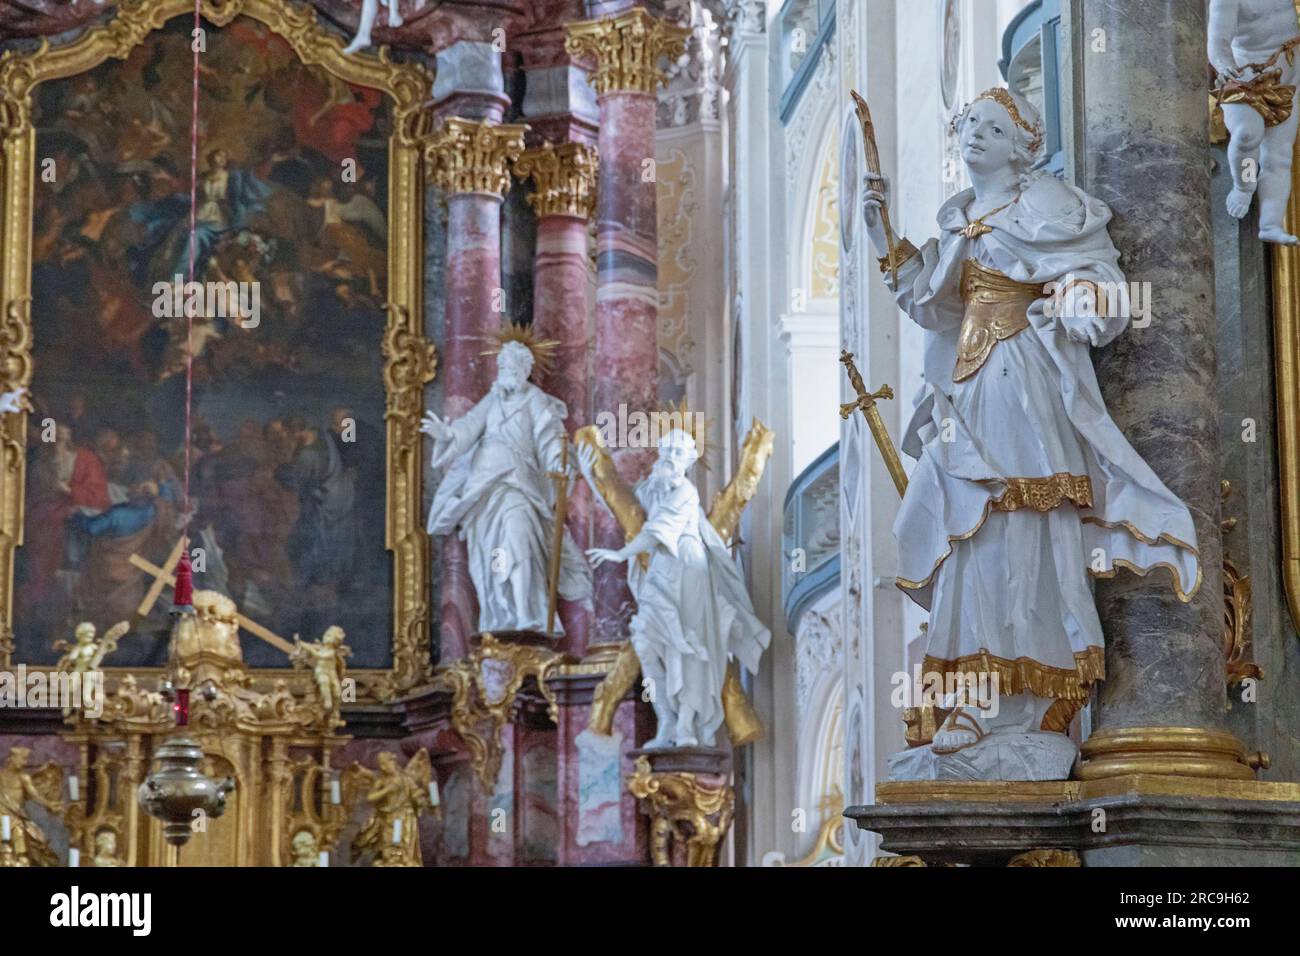 Altarraum der ehemaligen Zisterzienserabtei Kloster Schöntal in Hohenlohe Schöntal im Jagsttal, Baden-Württemberg, Deutschland, Europa Banque D'Images